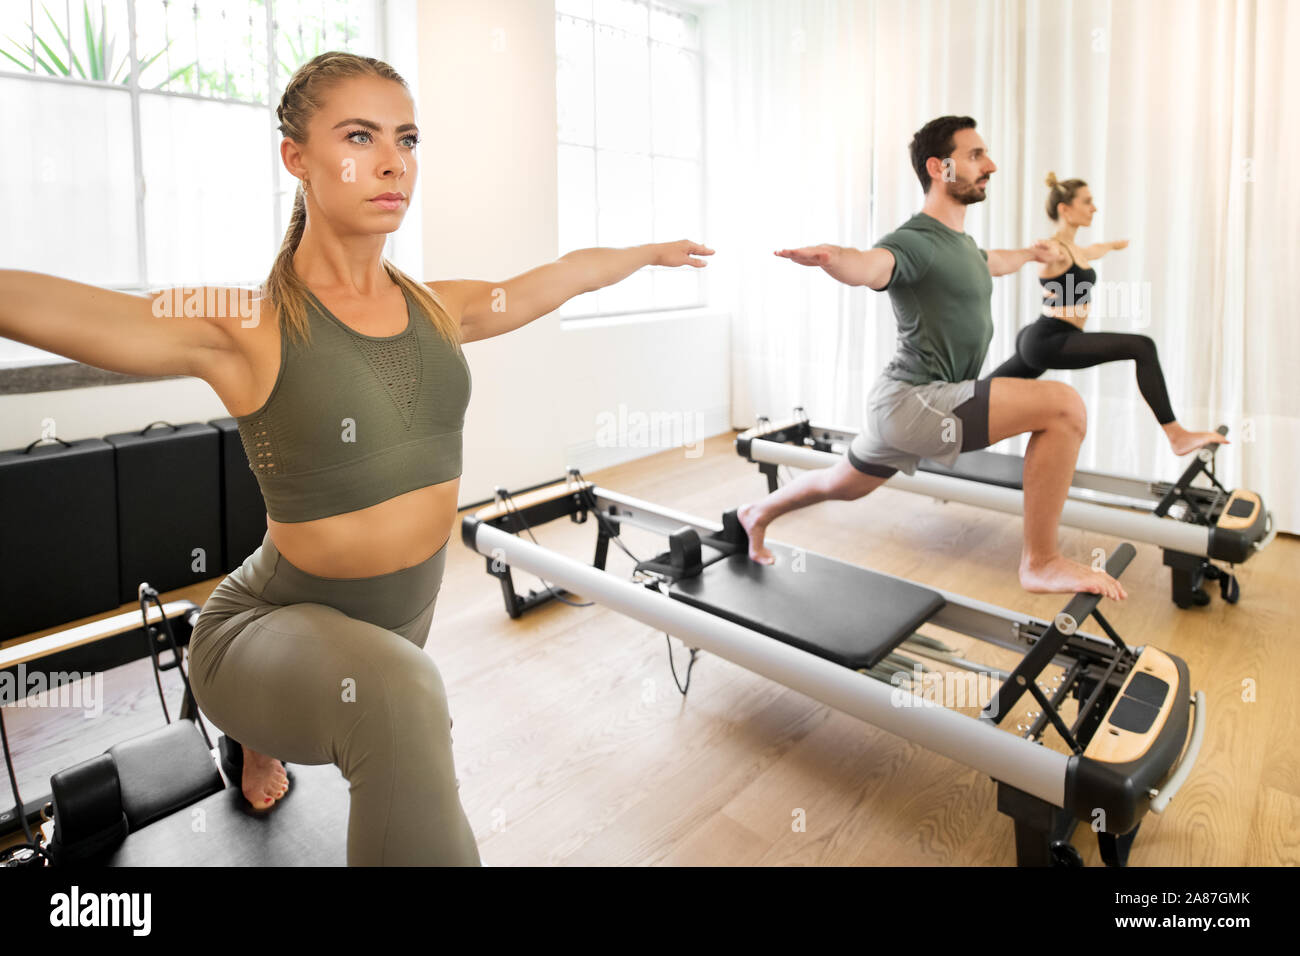 Las personas que trabajan fuera haciendo yoga alta lunge ejercicios sobre pilates reformador camas en un gimnasio en un concepto de salud y fitness Foto de stock